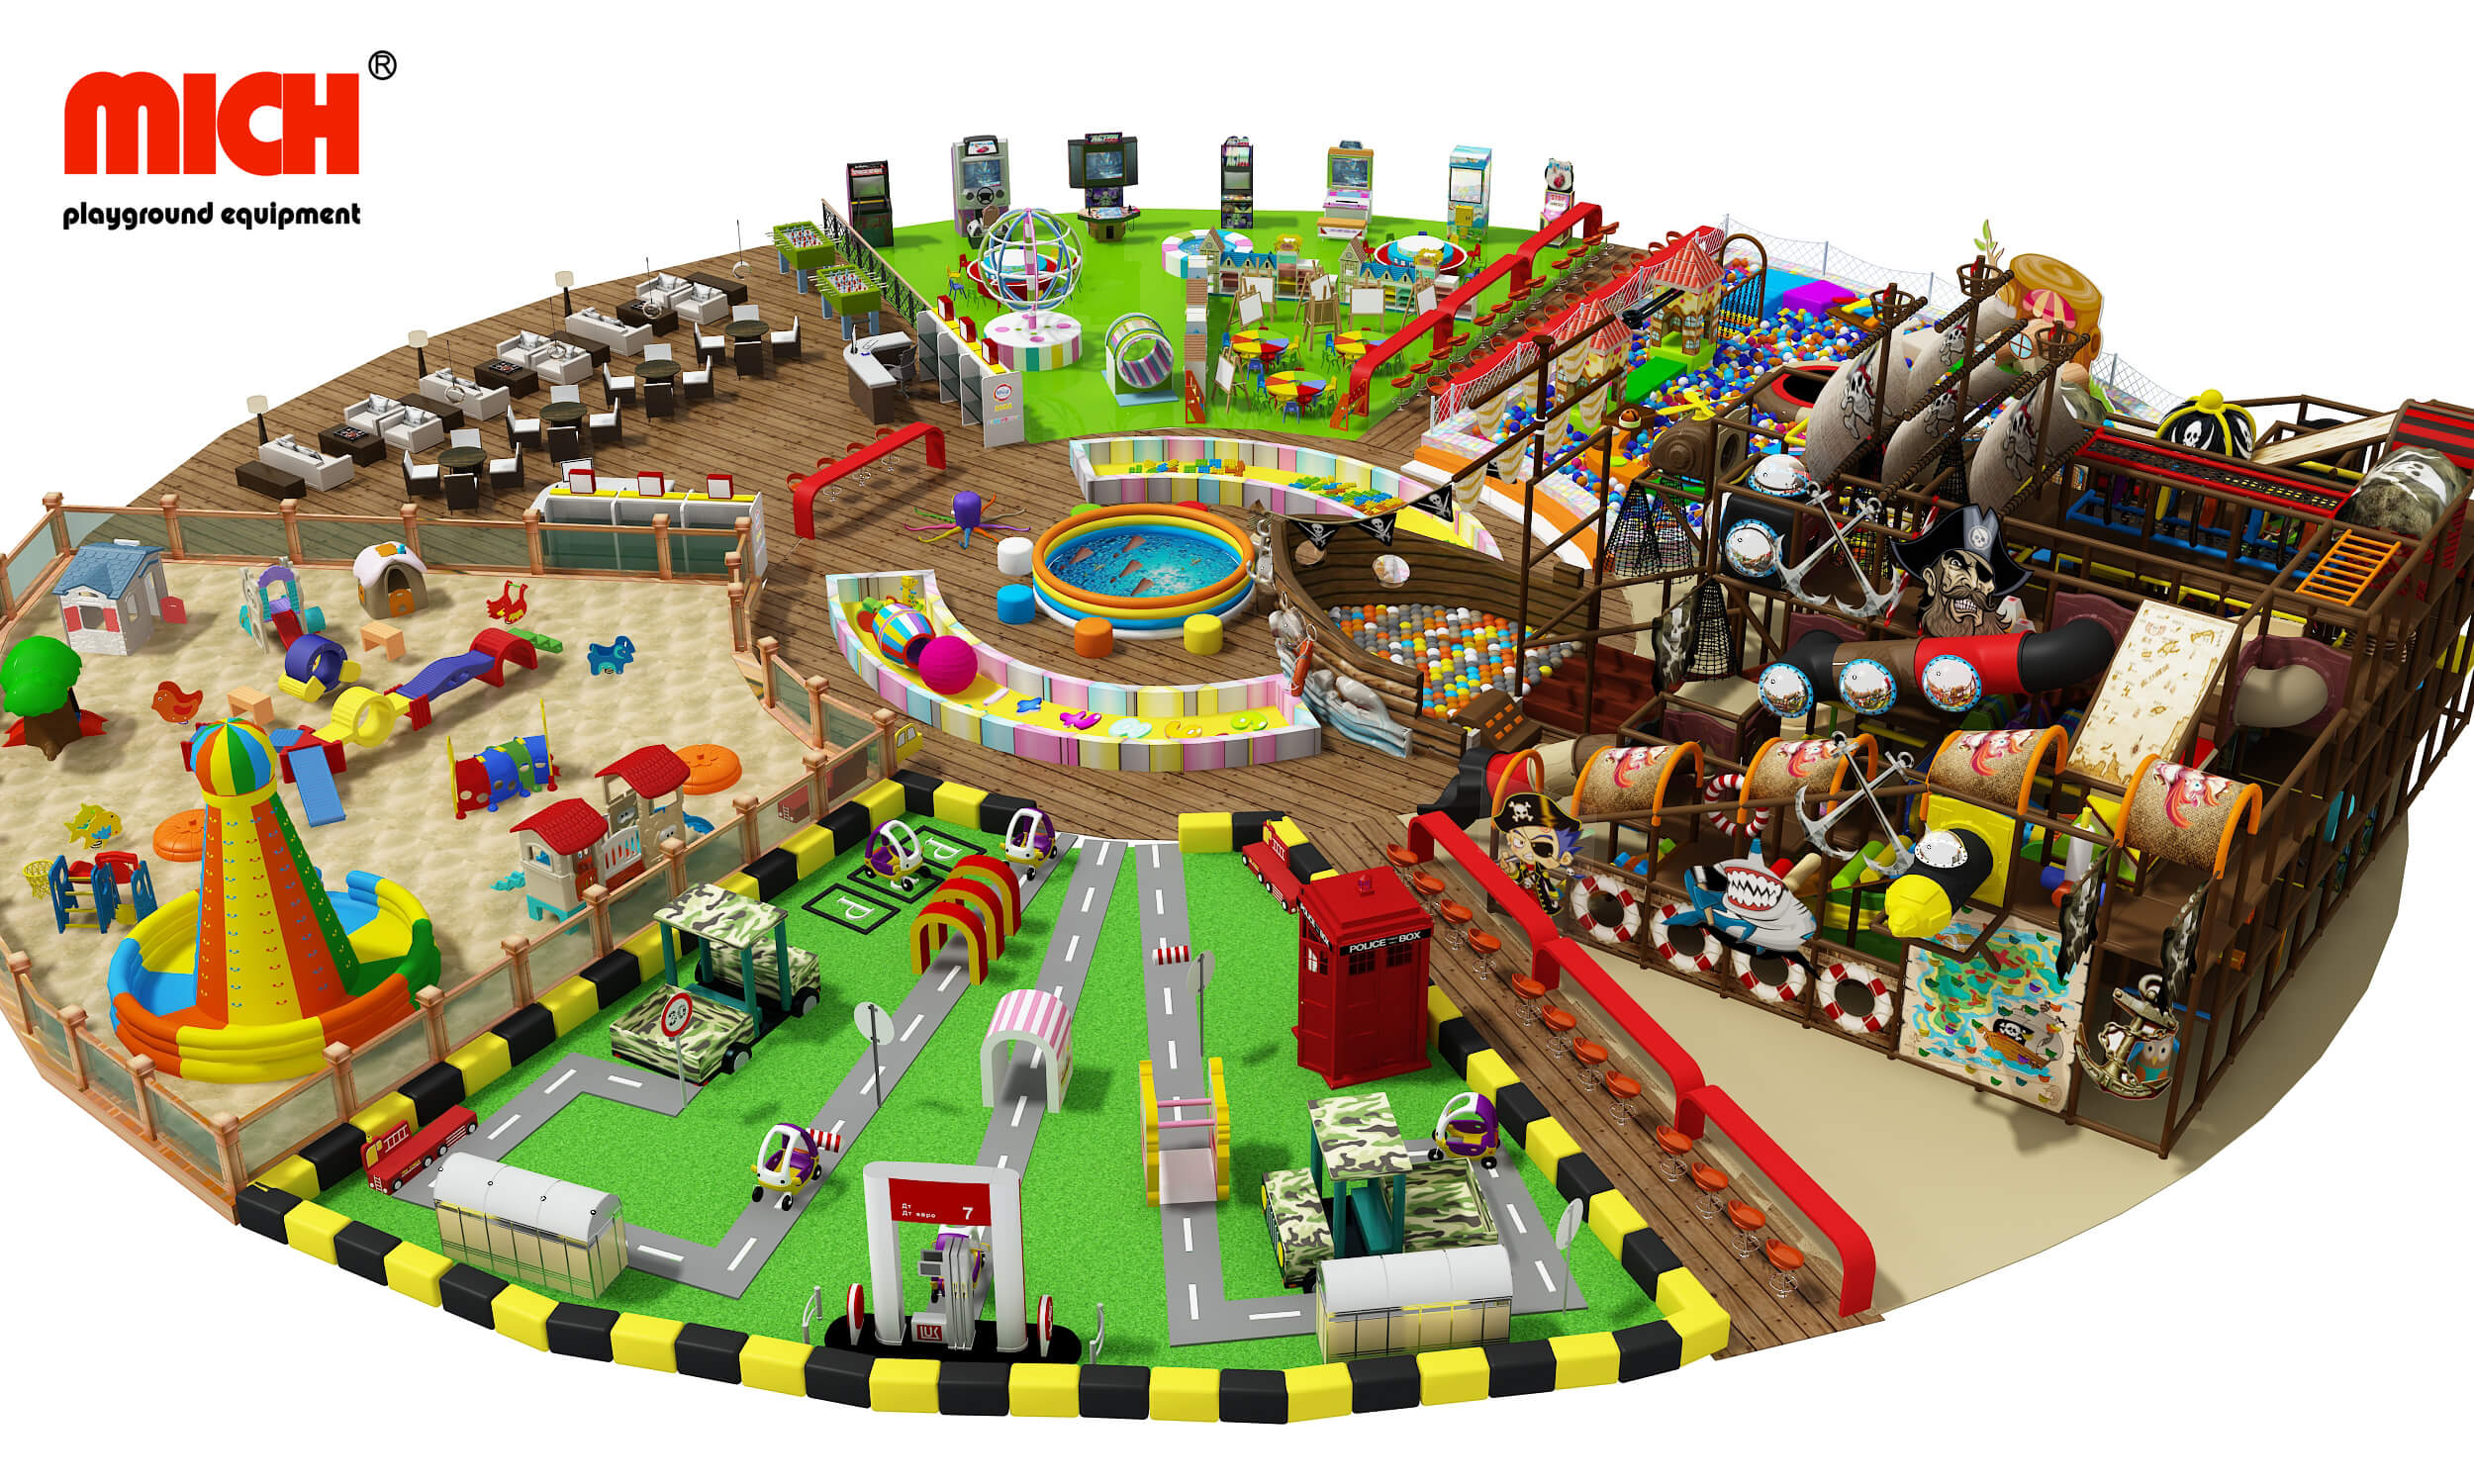 Gran centro comercial de juegos interiores para niños pequeños